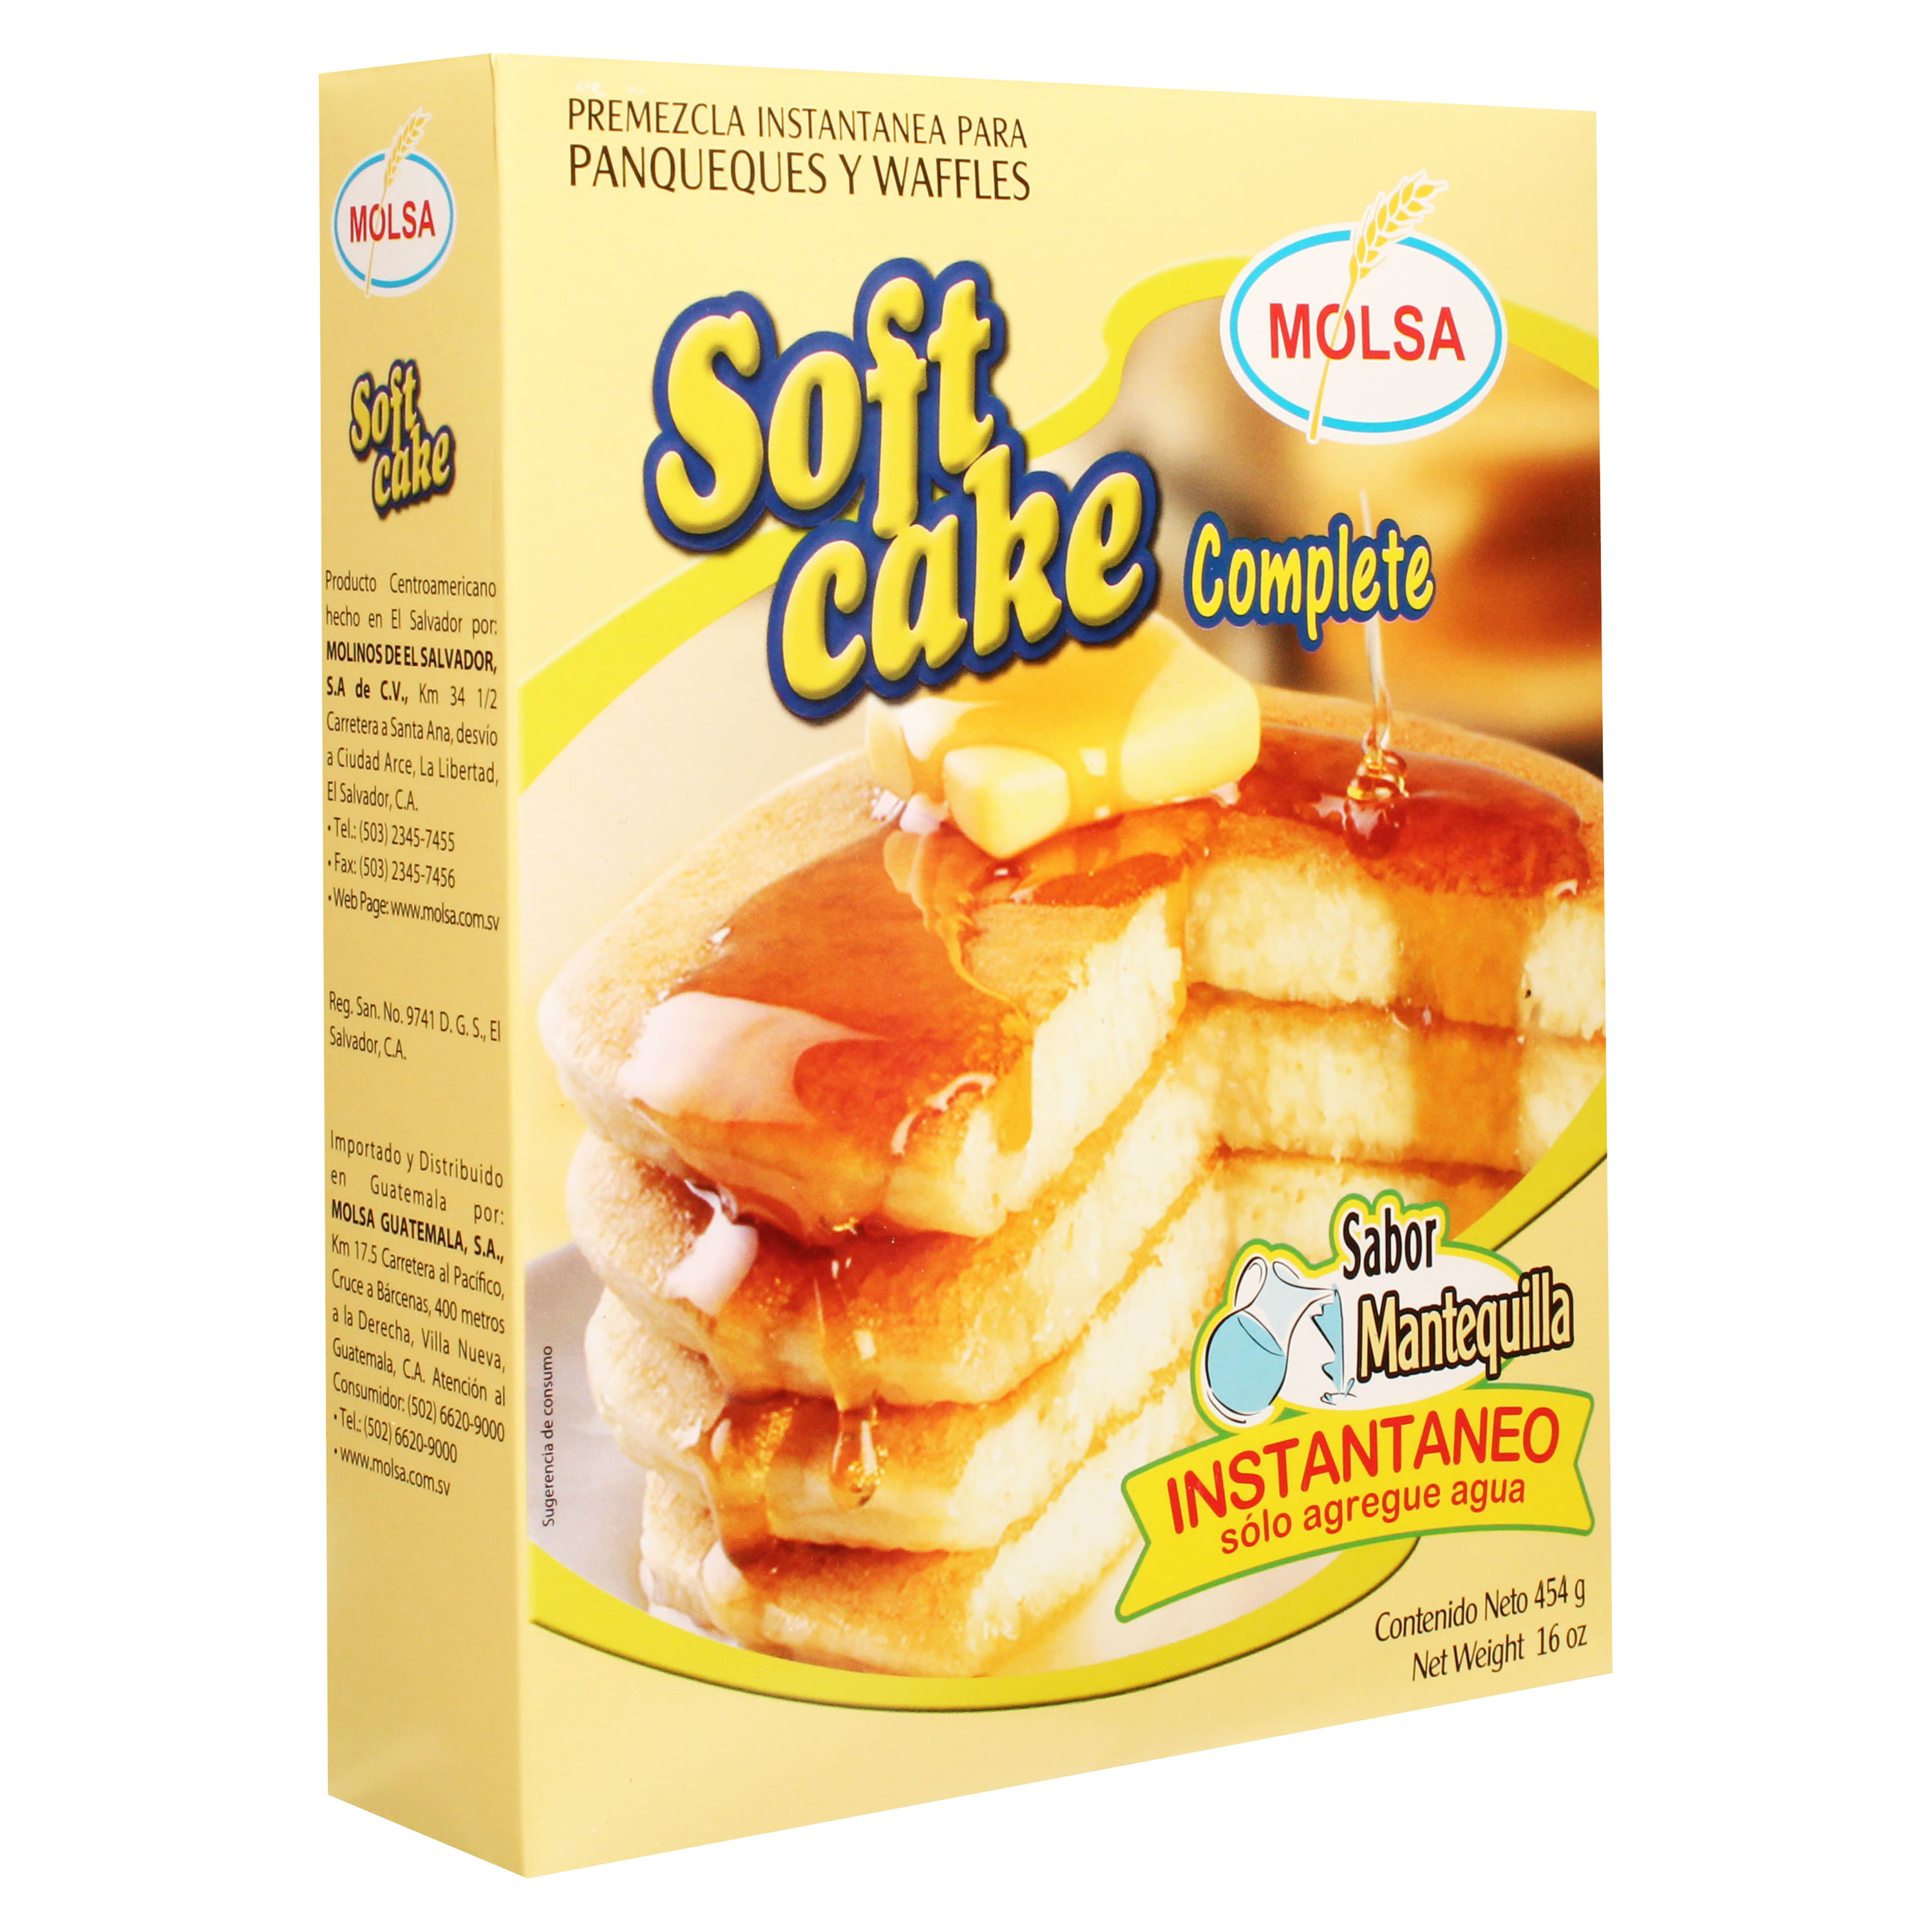 Bicarbonato de Sodio E500ii, bote 150 gramos – Tartaletas Pastry Chef